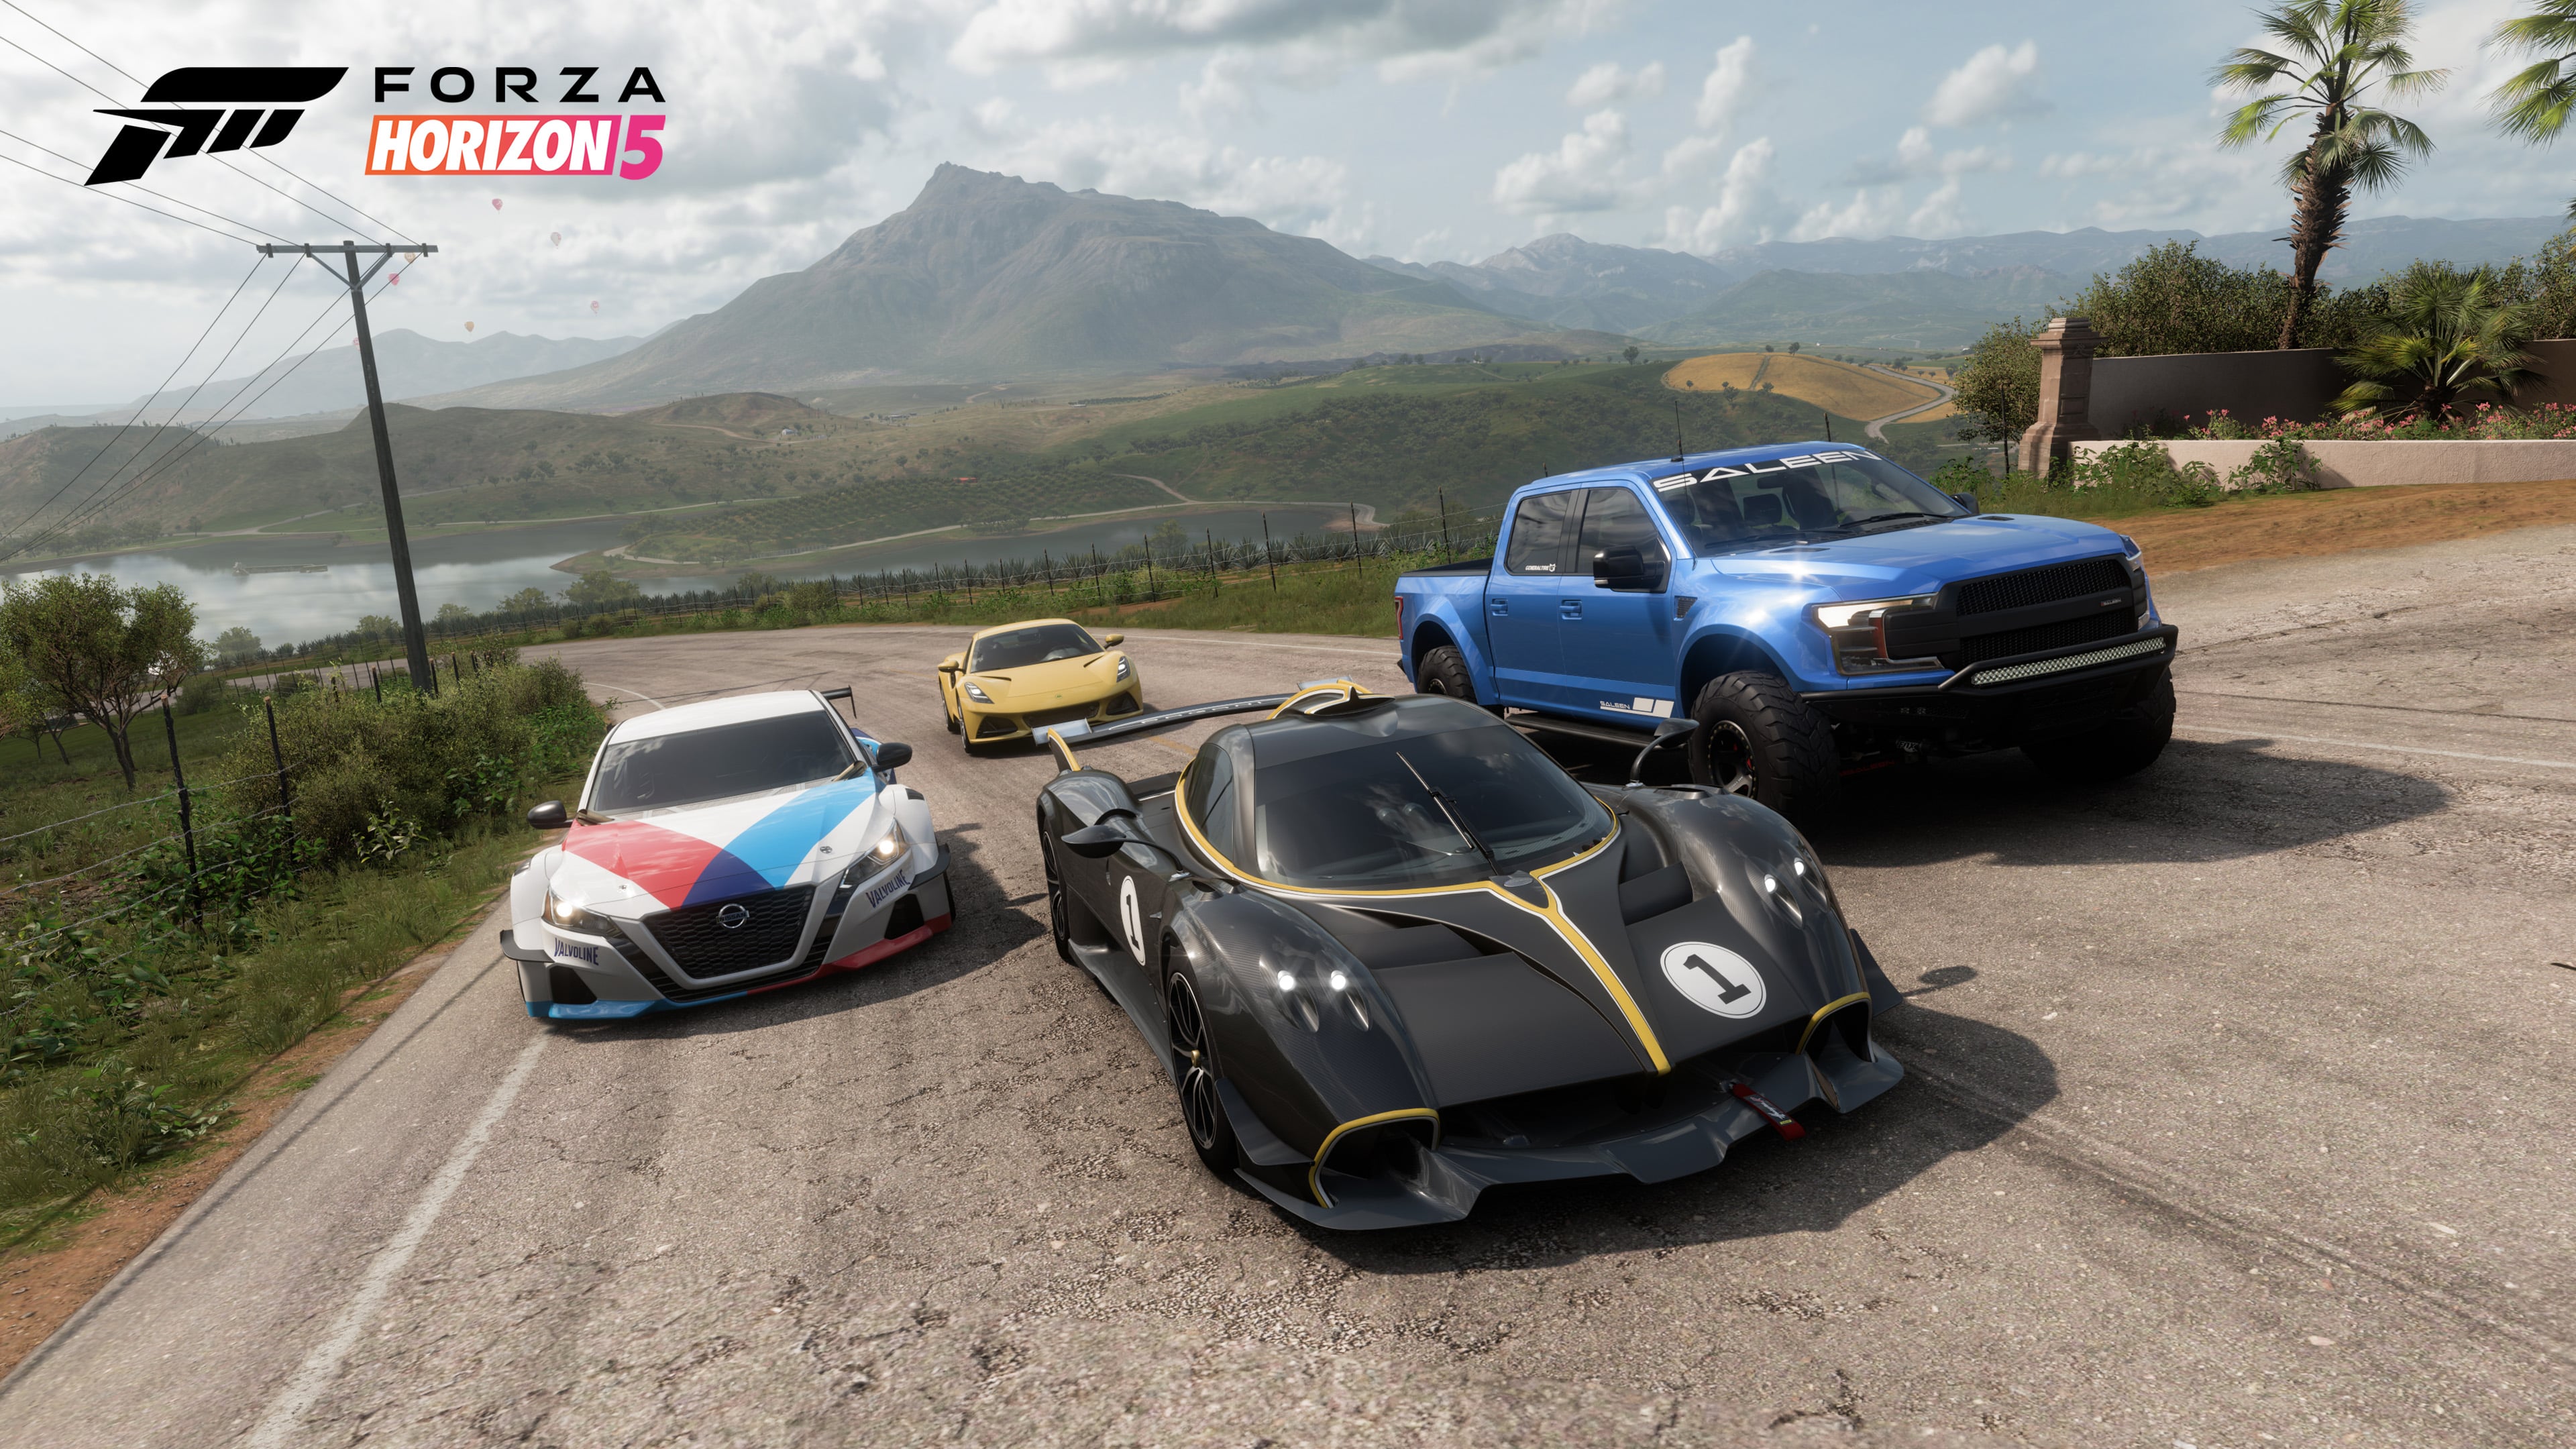 Forza Horizon 5 Update for June 20